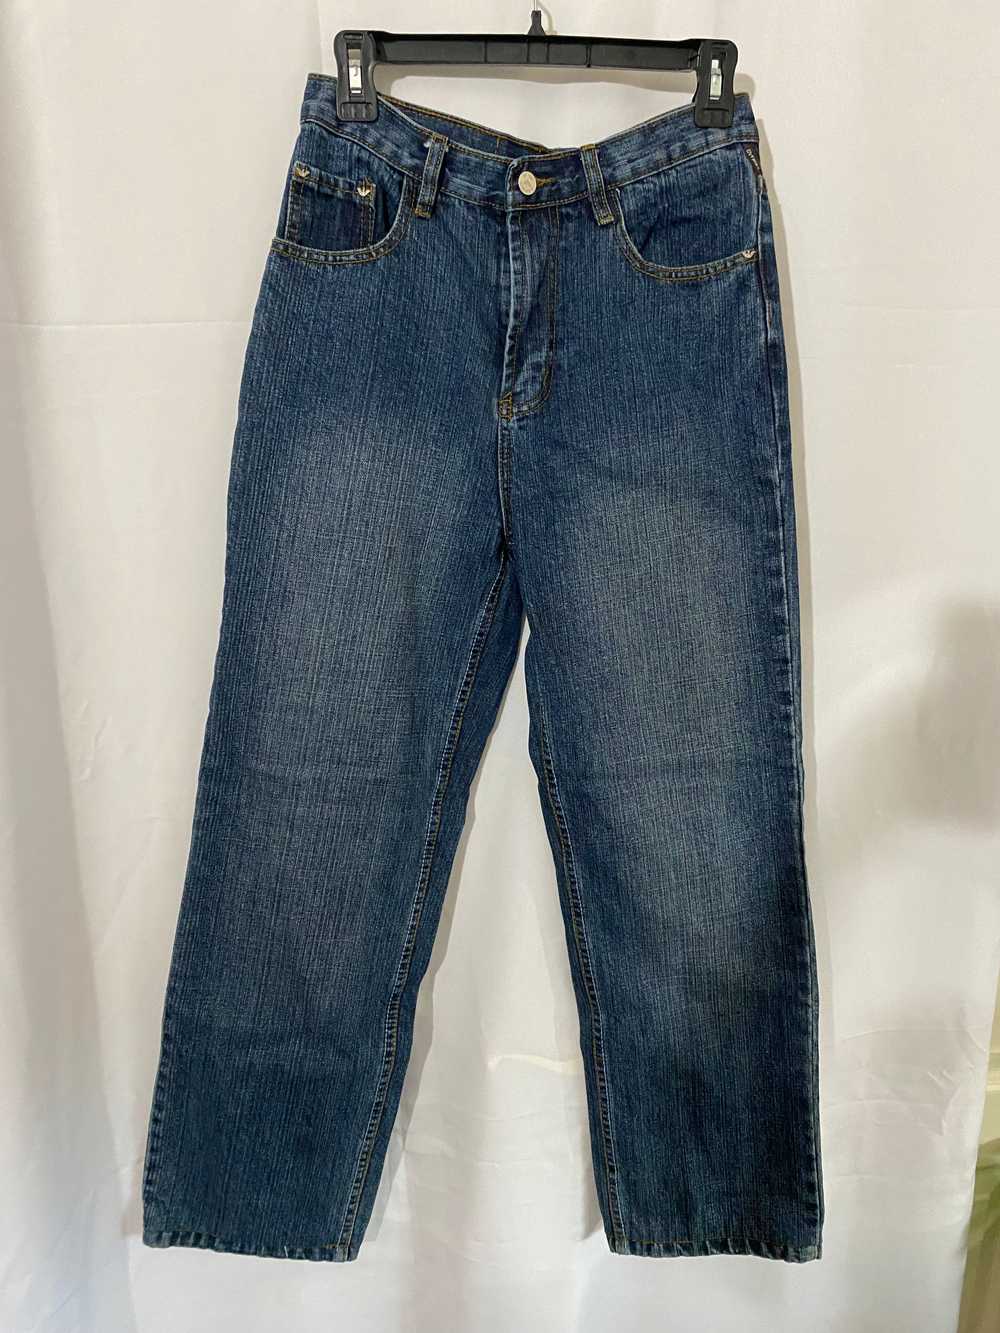 Vintage Armani Jeans - image 1